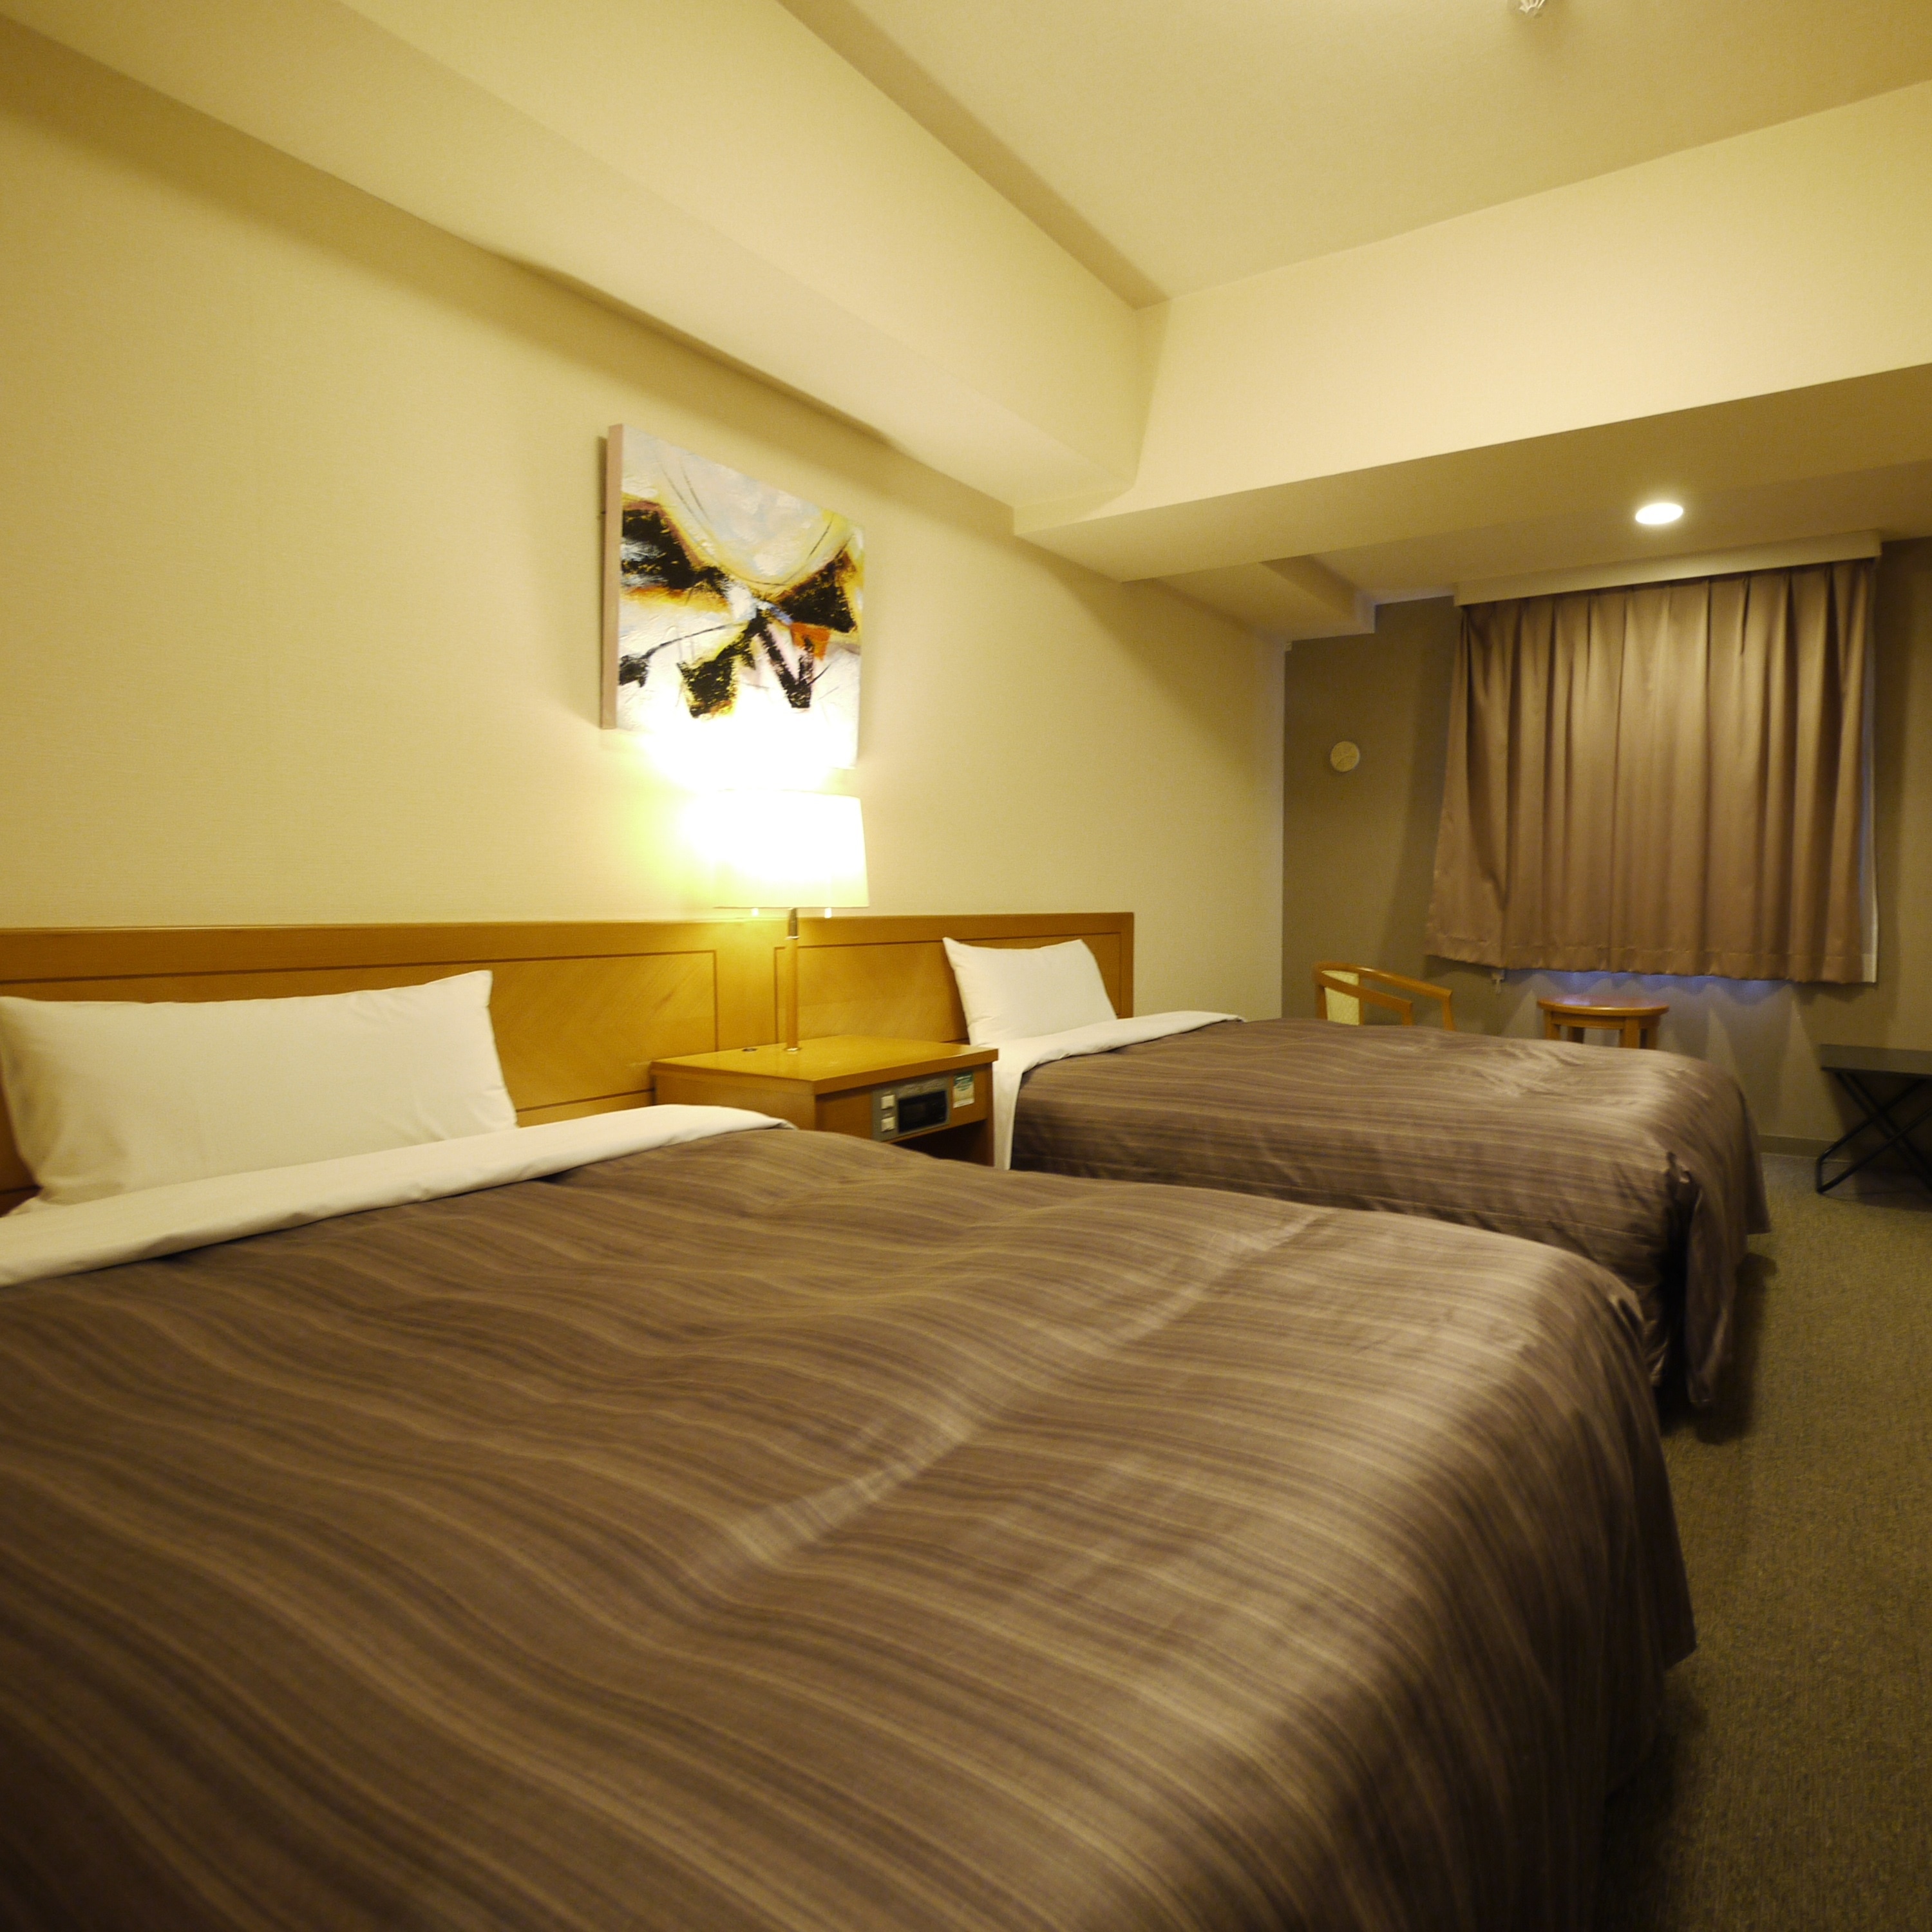 Kamar twin memiliki tempat tidur single dengan lebar tempat tidur 120 cm, tetapi Anda dapat bersantai di kamar yang luas.